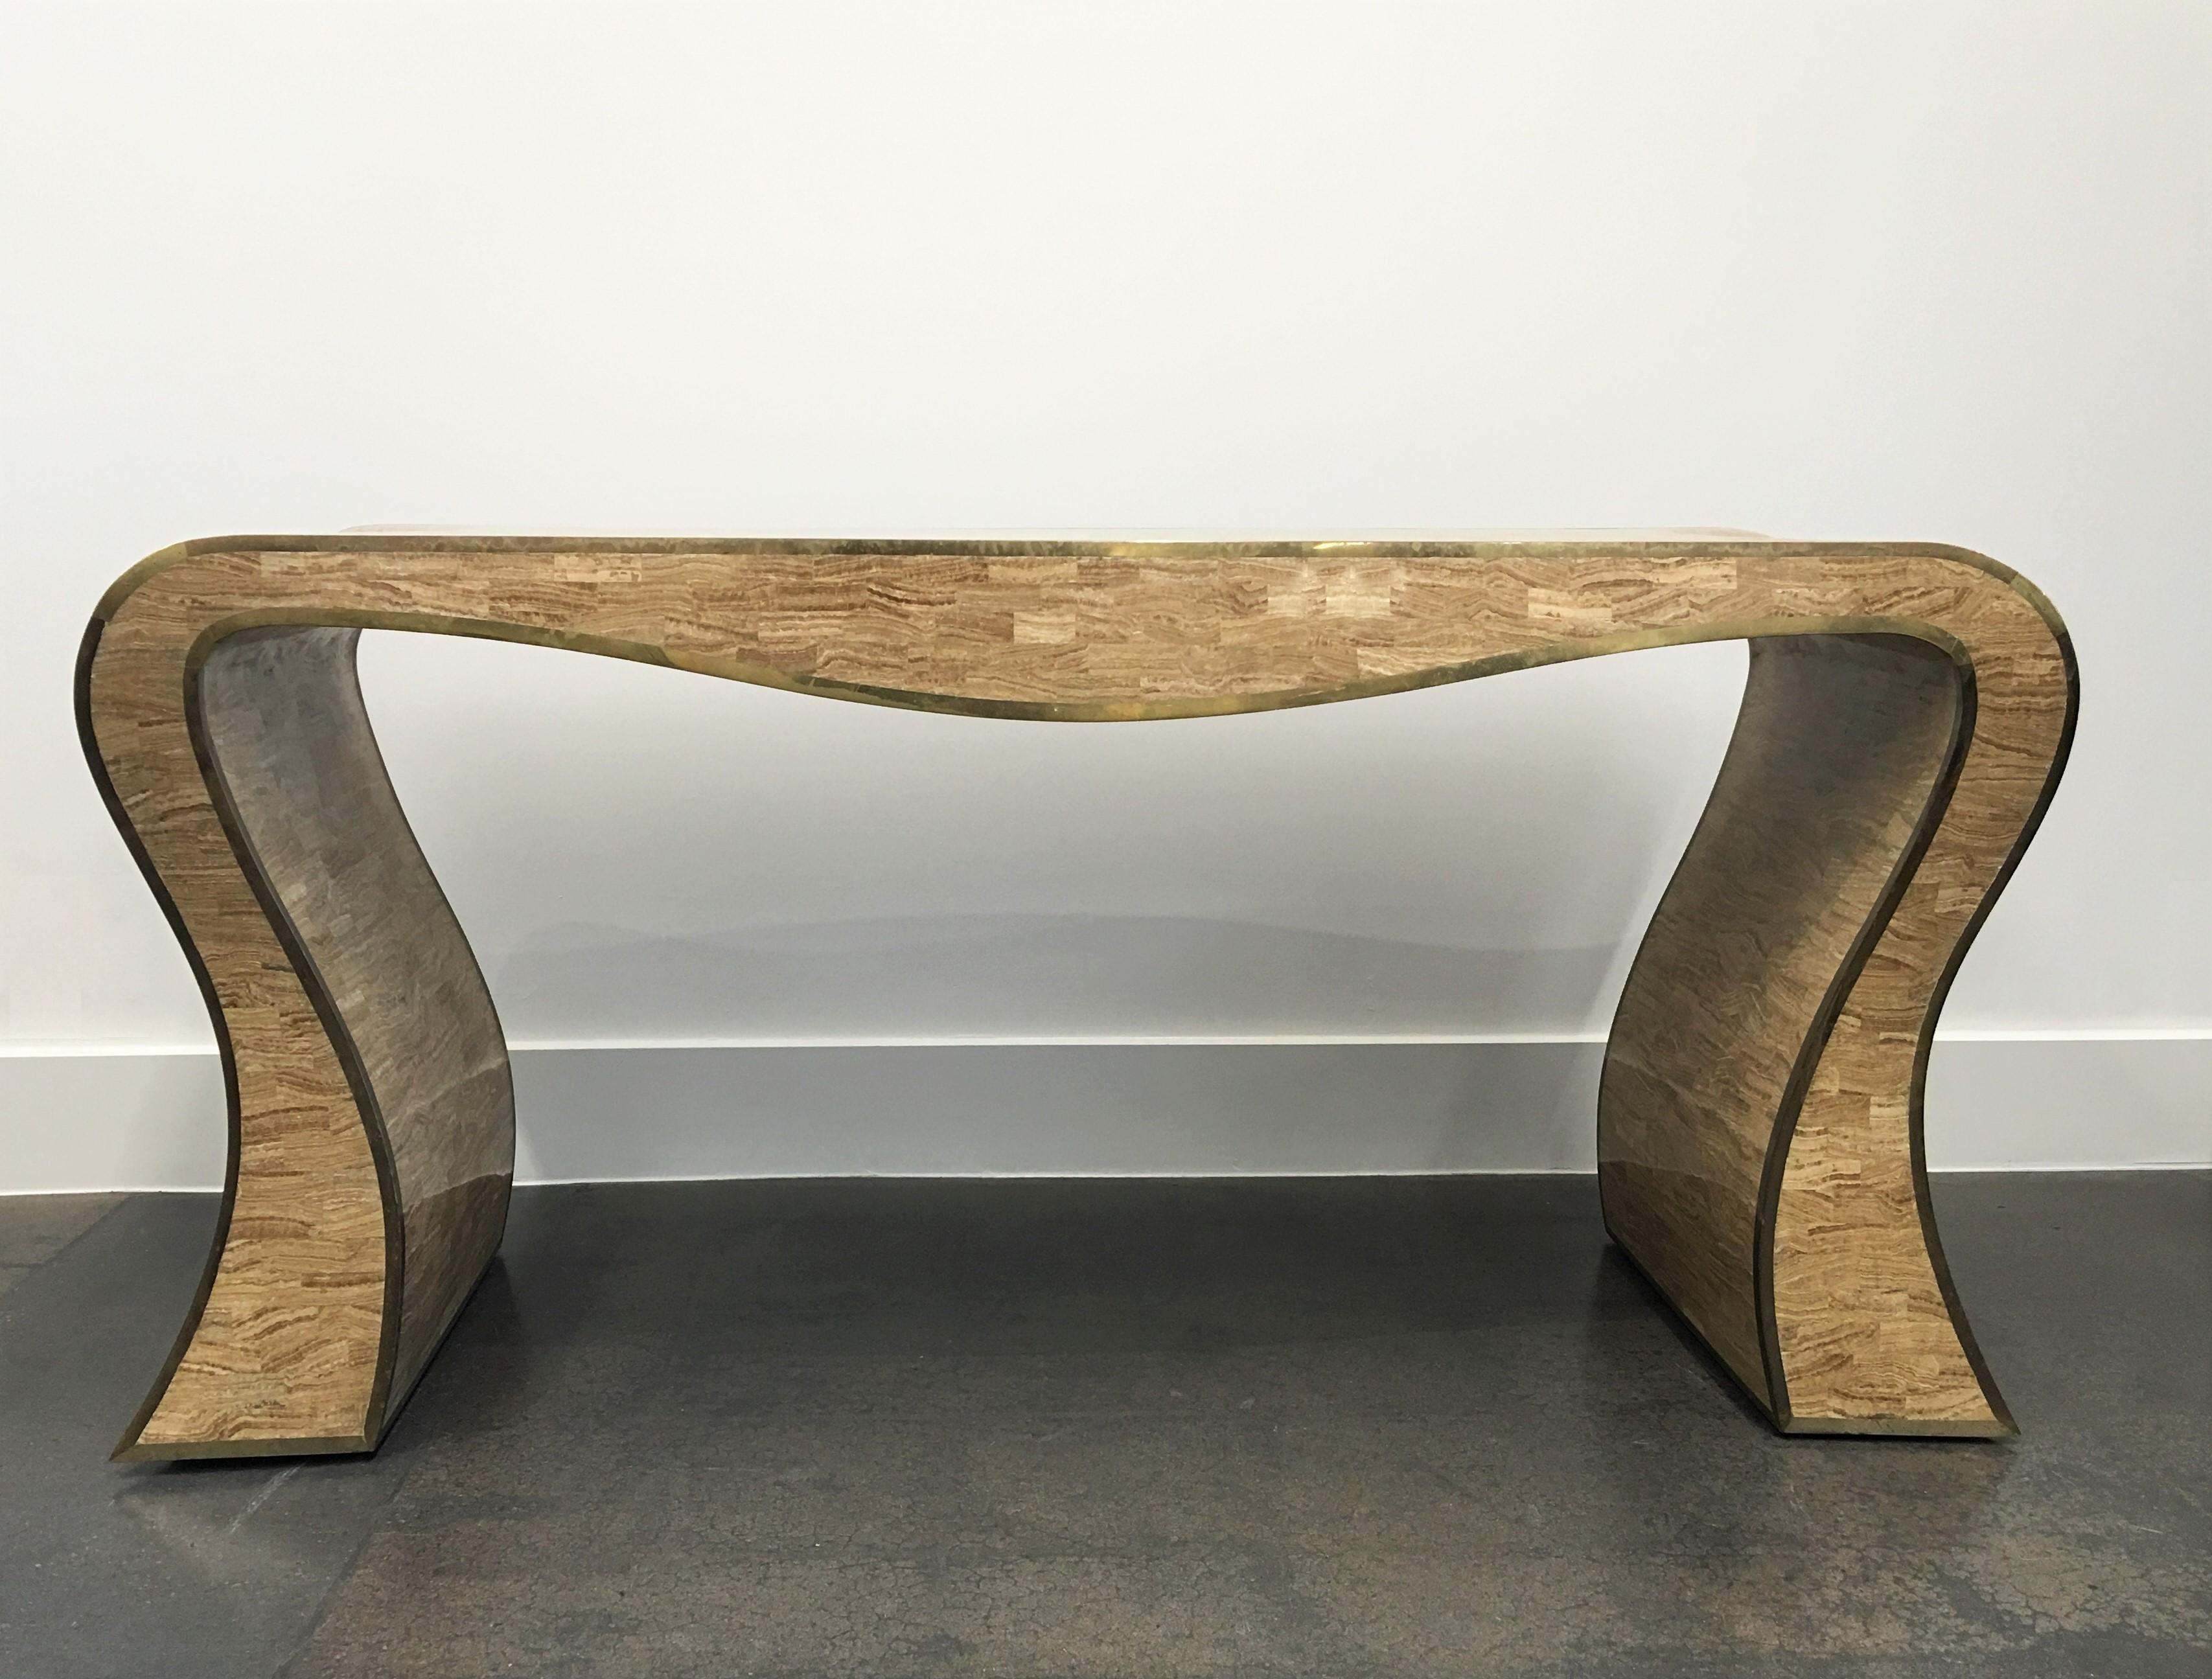 Une table console sculpturale assez étonnante de Maitland-Smith. Il s'agit d'une pierre tessellée avec une garniture en laiton de forme sinueuse. Une table très étonnante. La garniture en laiton est de la plus belle facture et présente une patine